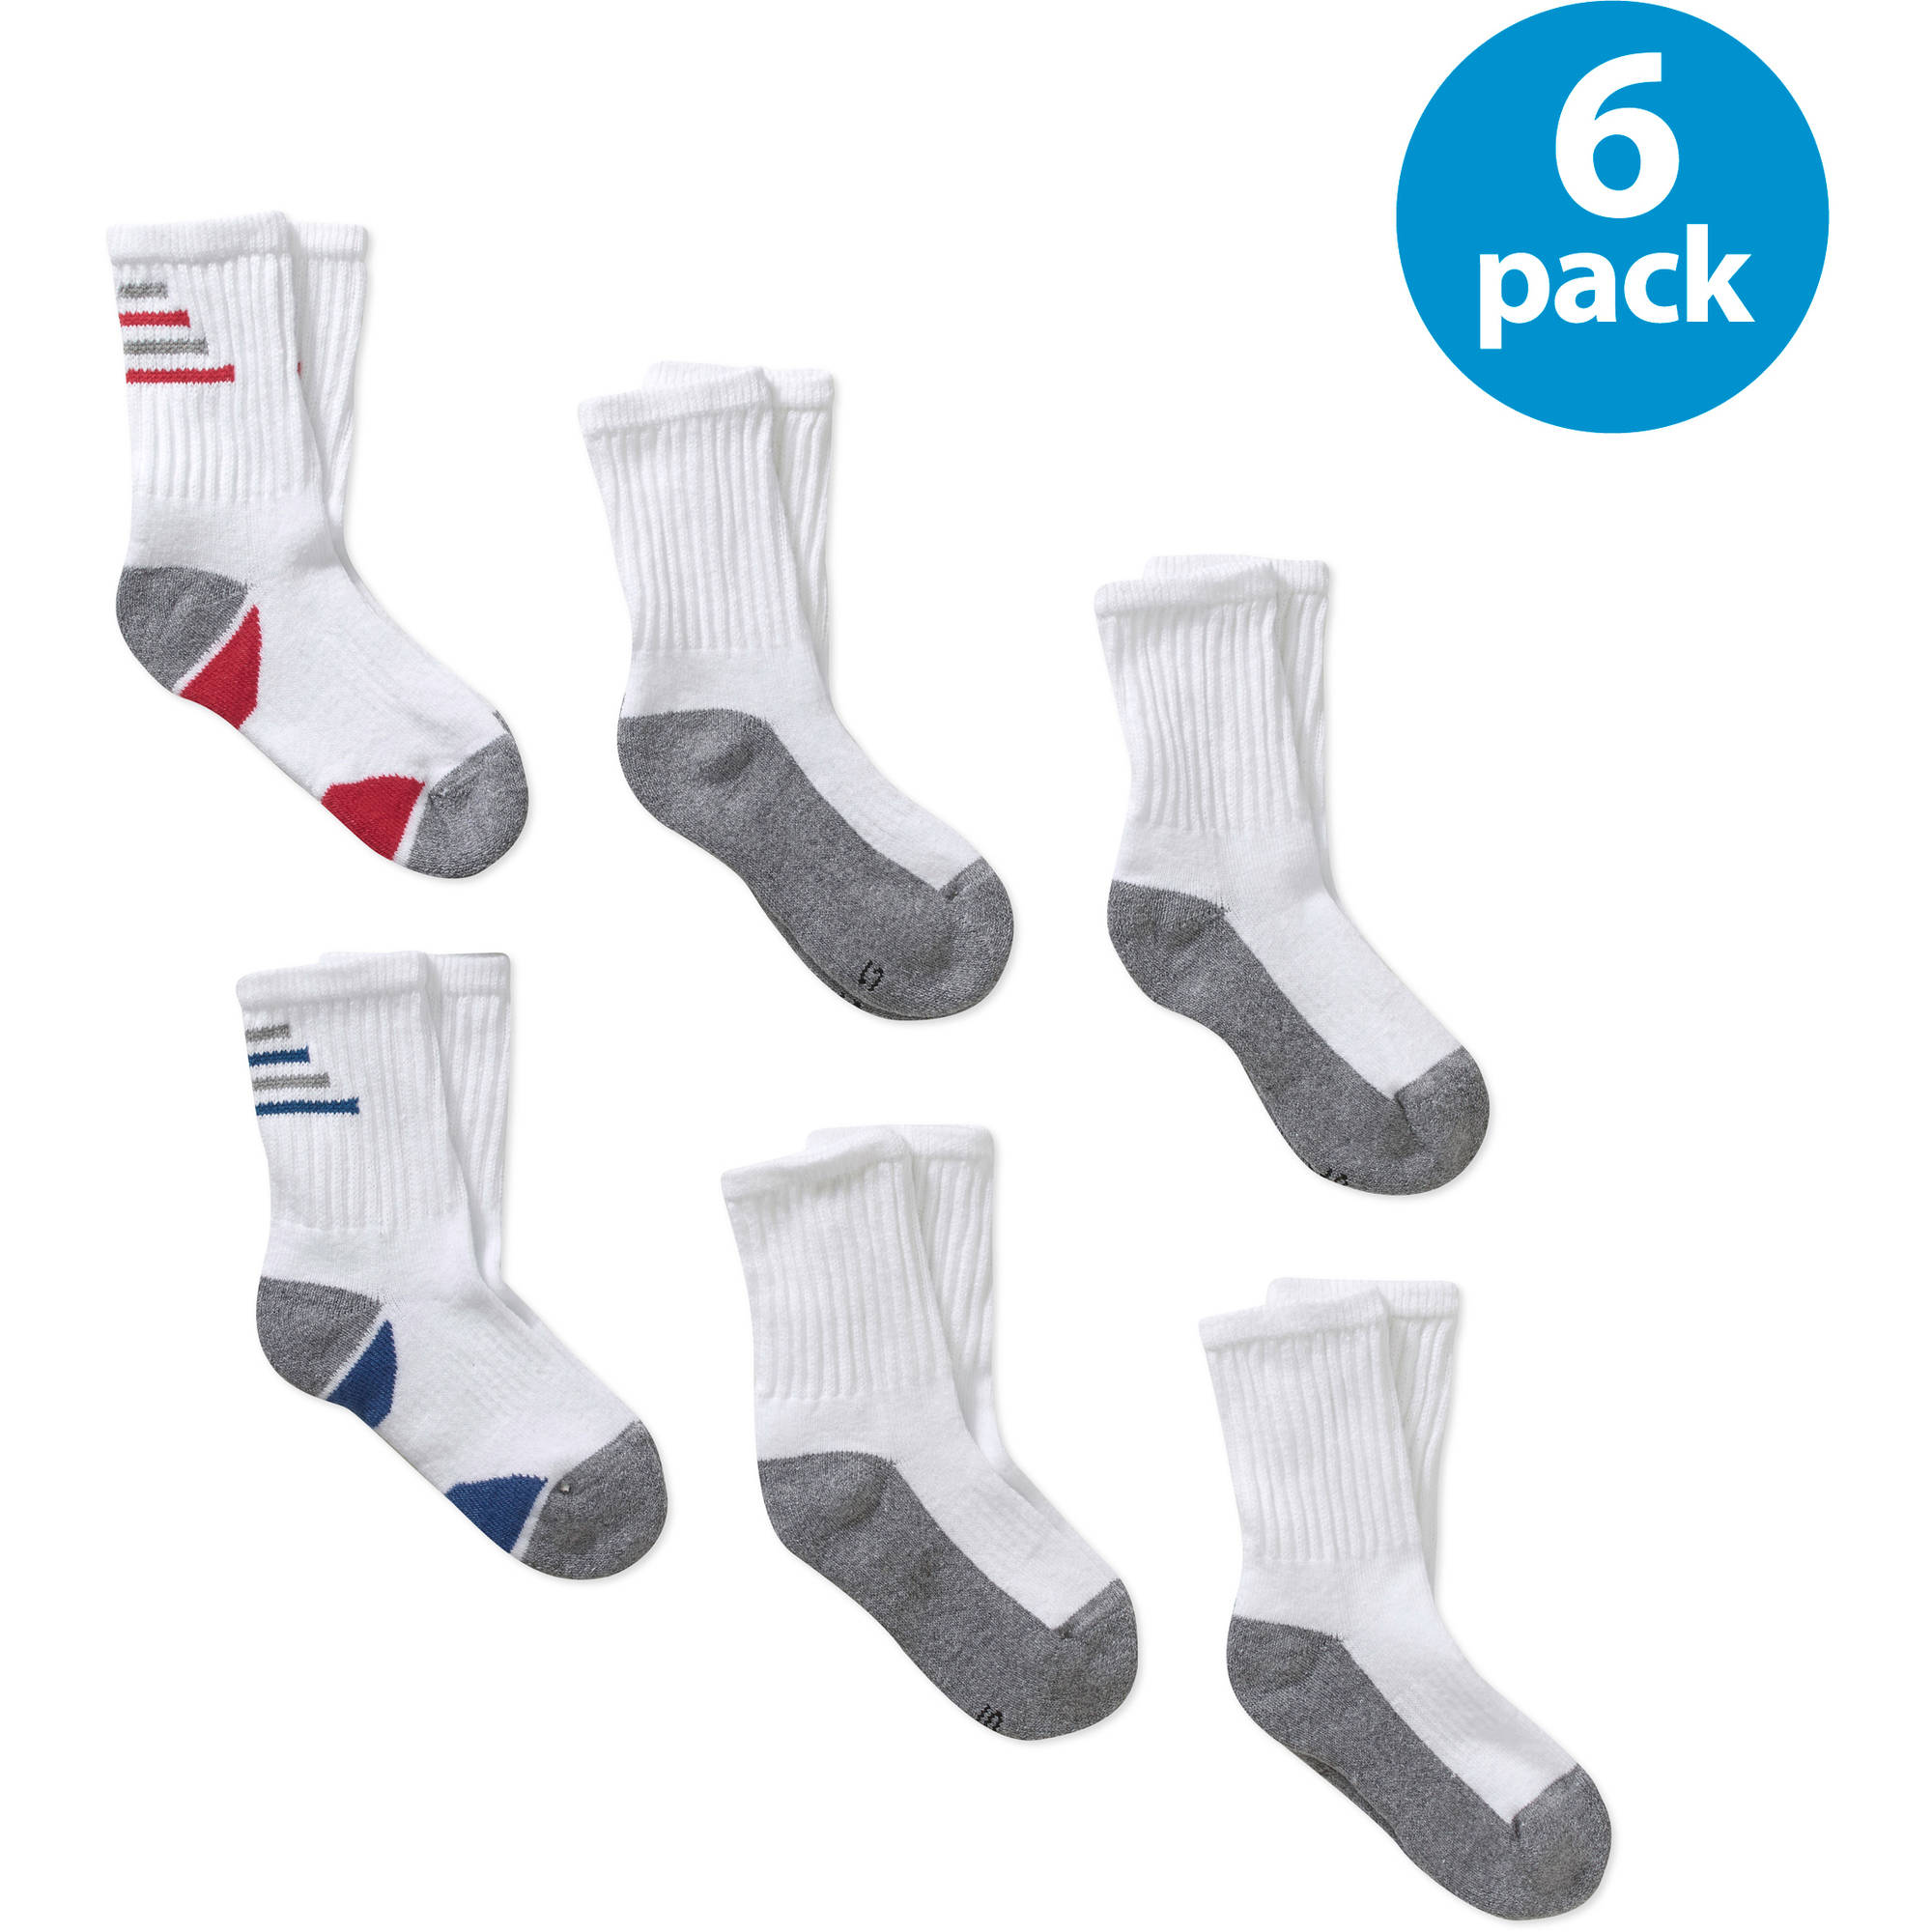 Boys' Crew Socks, 6-Pack - image 1 of 1